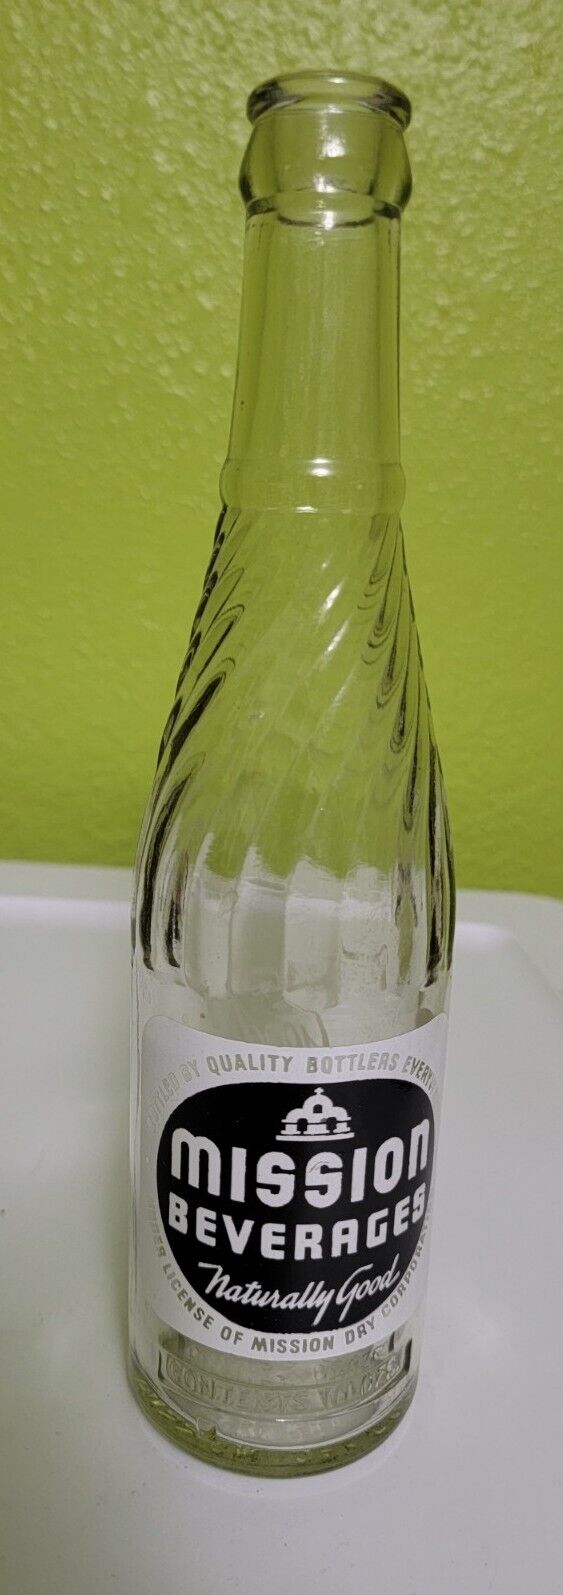 Rare Vintage Antique Soda Pop Glass Bottle Mission Beverages Reno Nevada 